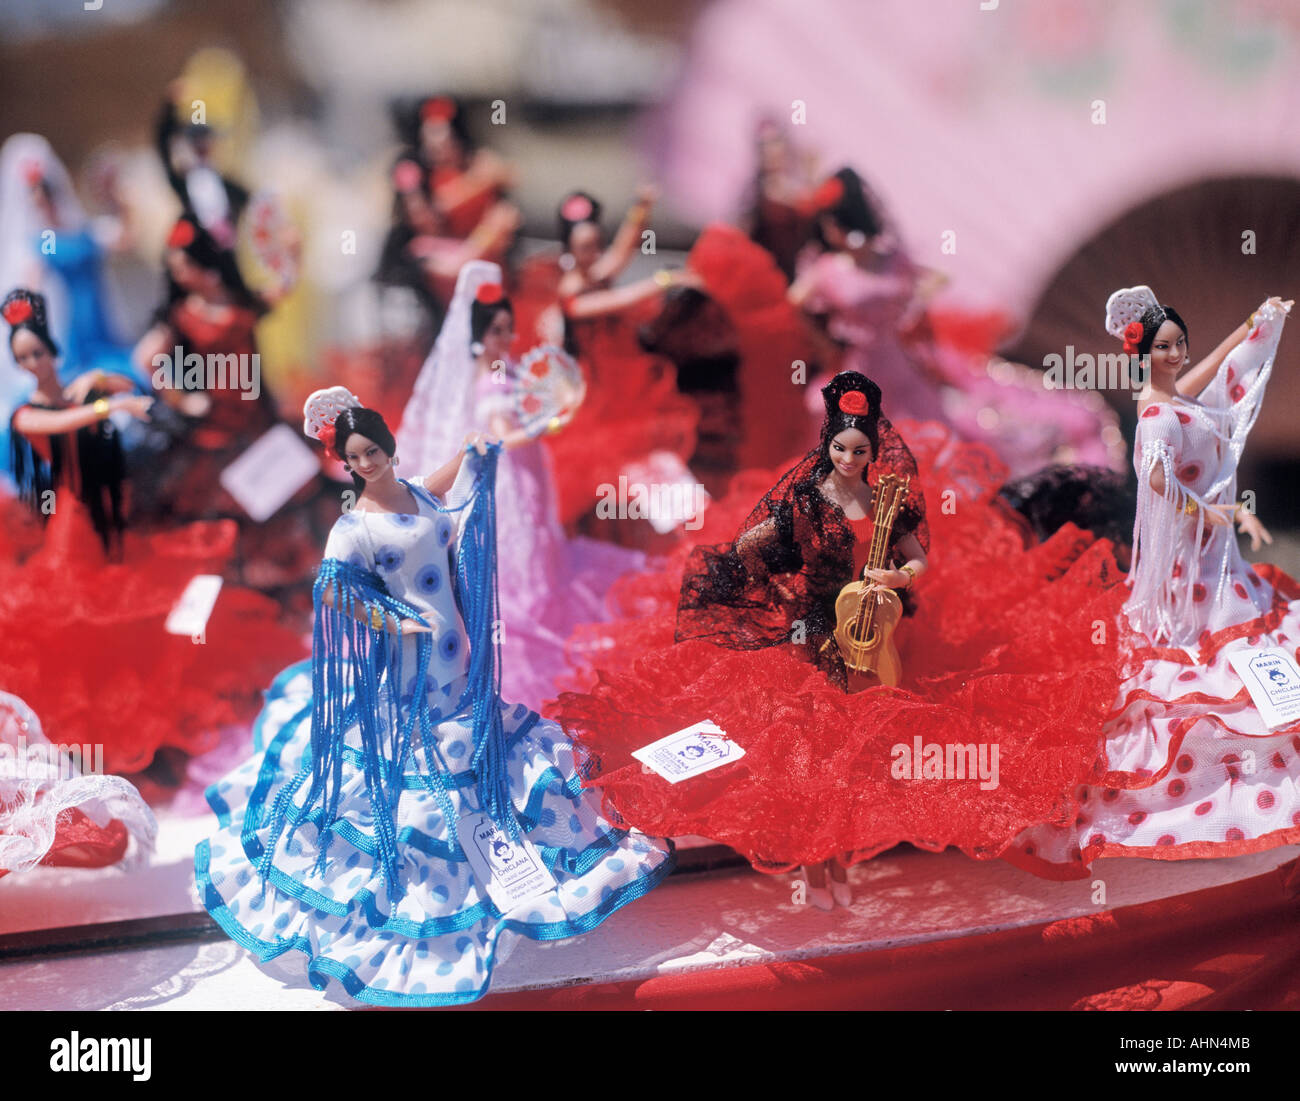 Spanien-Souvenir Puppen im Schaufenster Flamenco Kleider tragen  Stockfotografie - Alamy